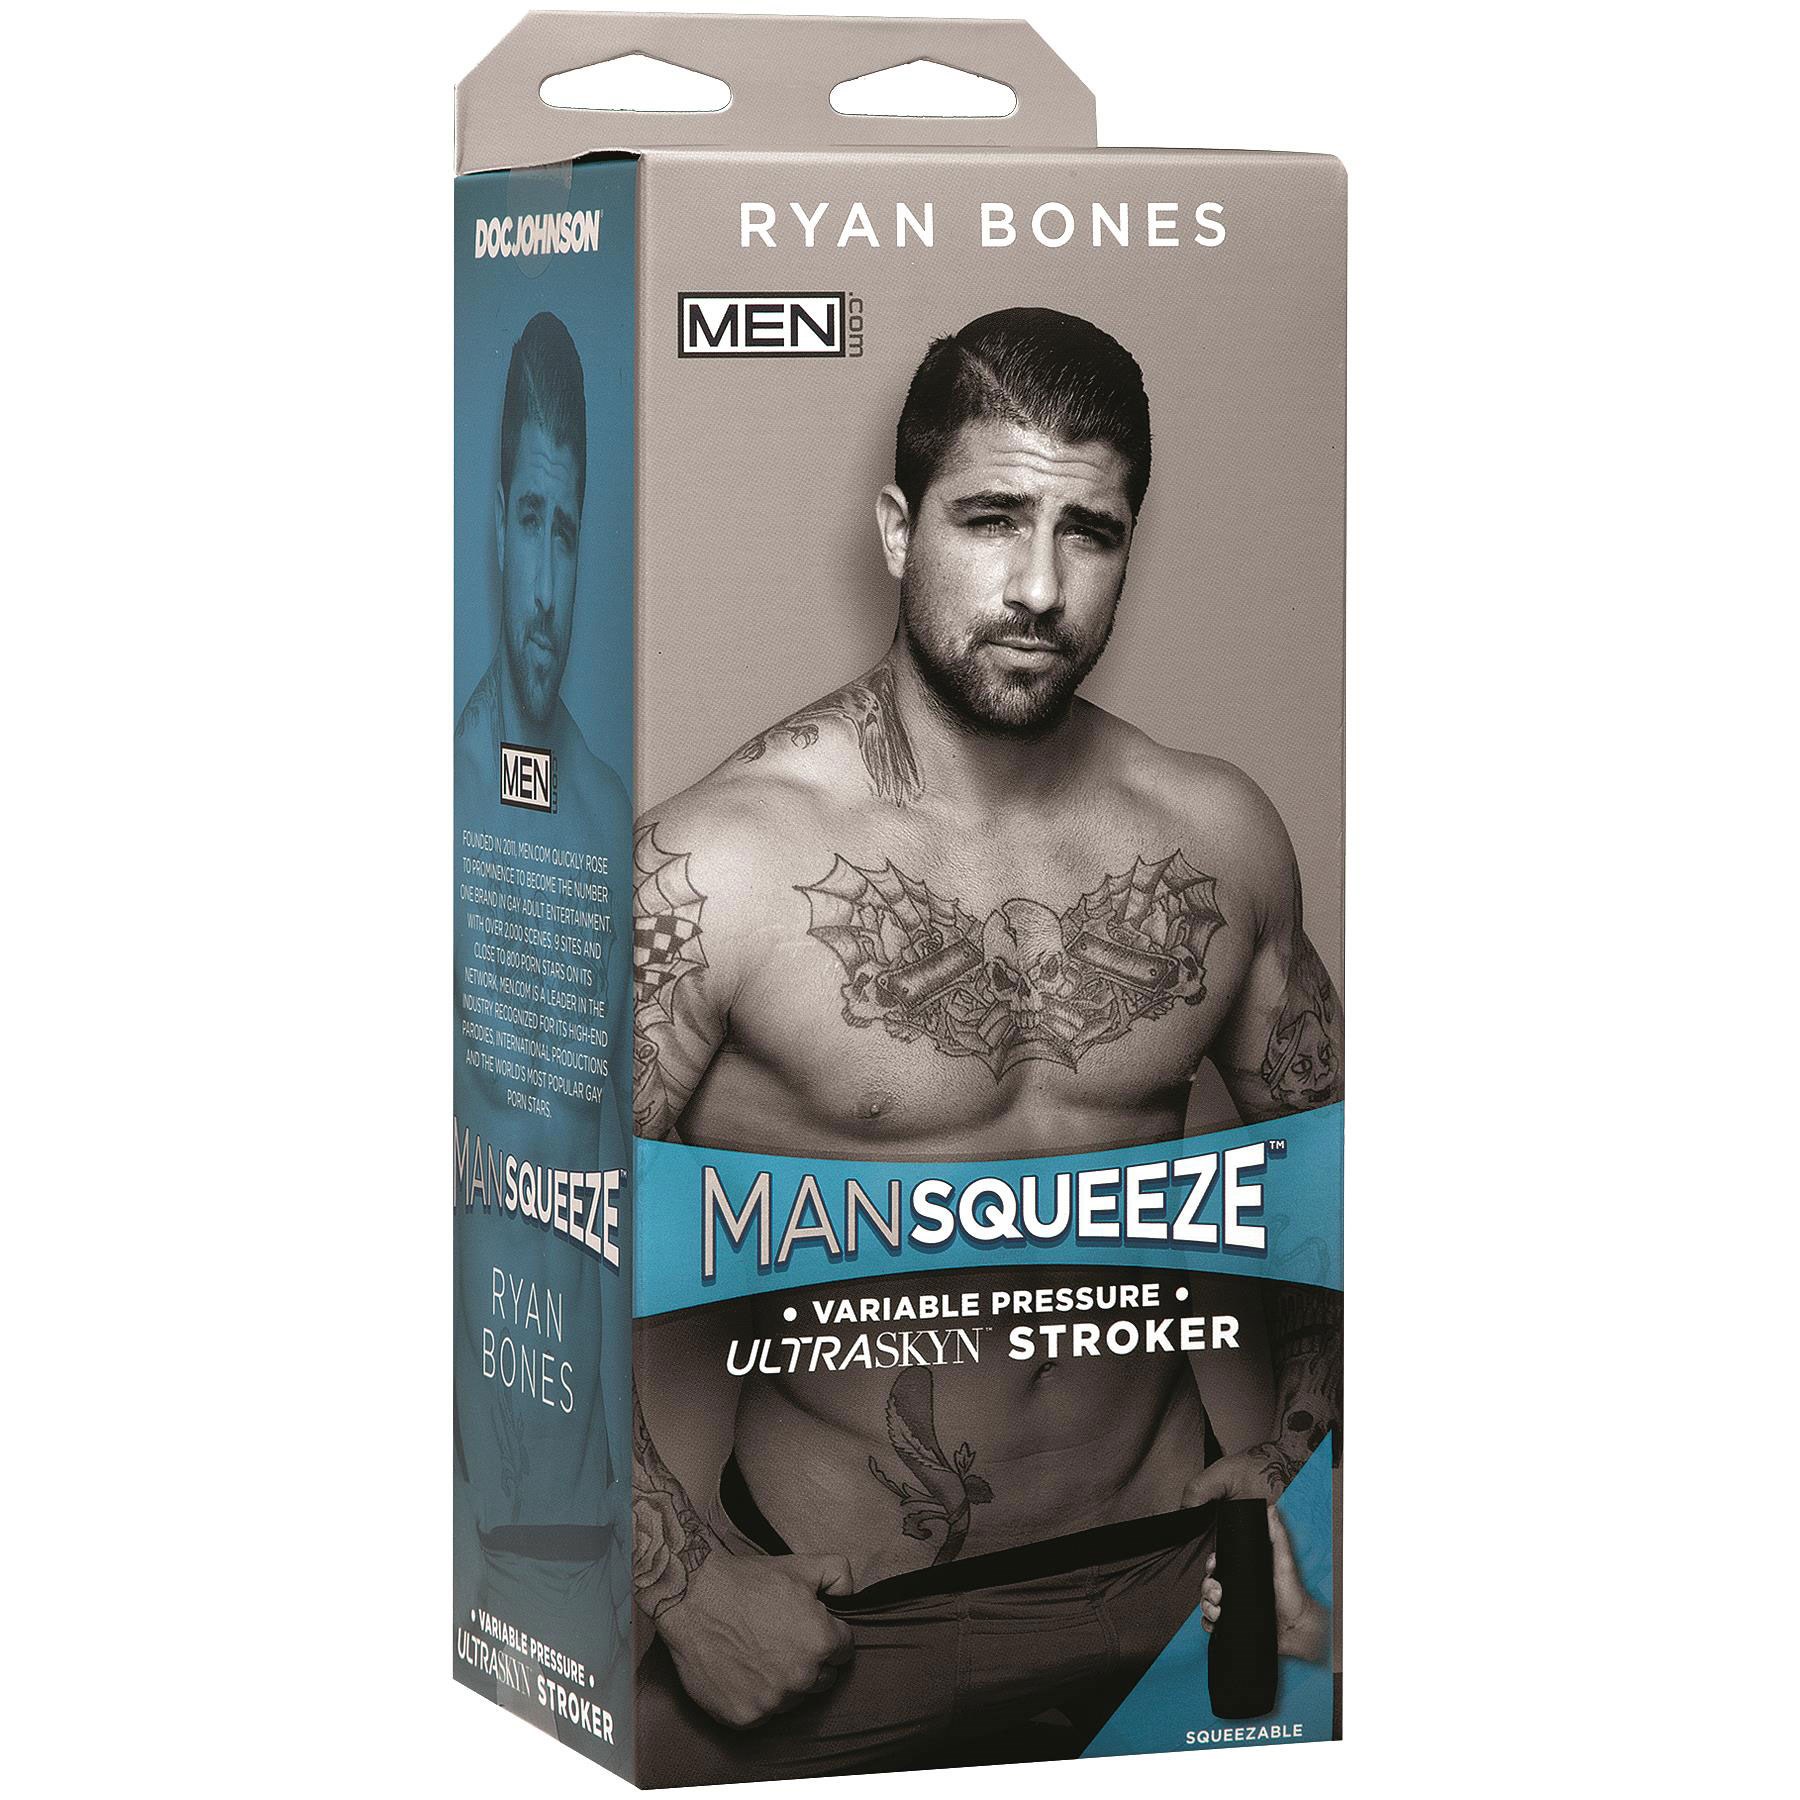 Mansqueeze Ryan Bones Ass Stroker packaging